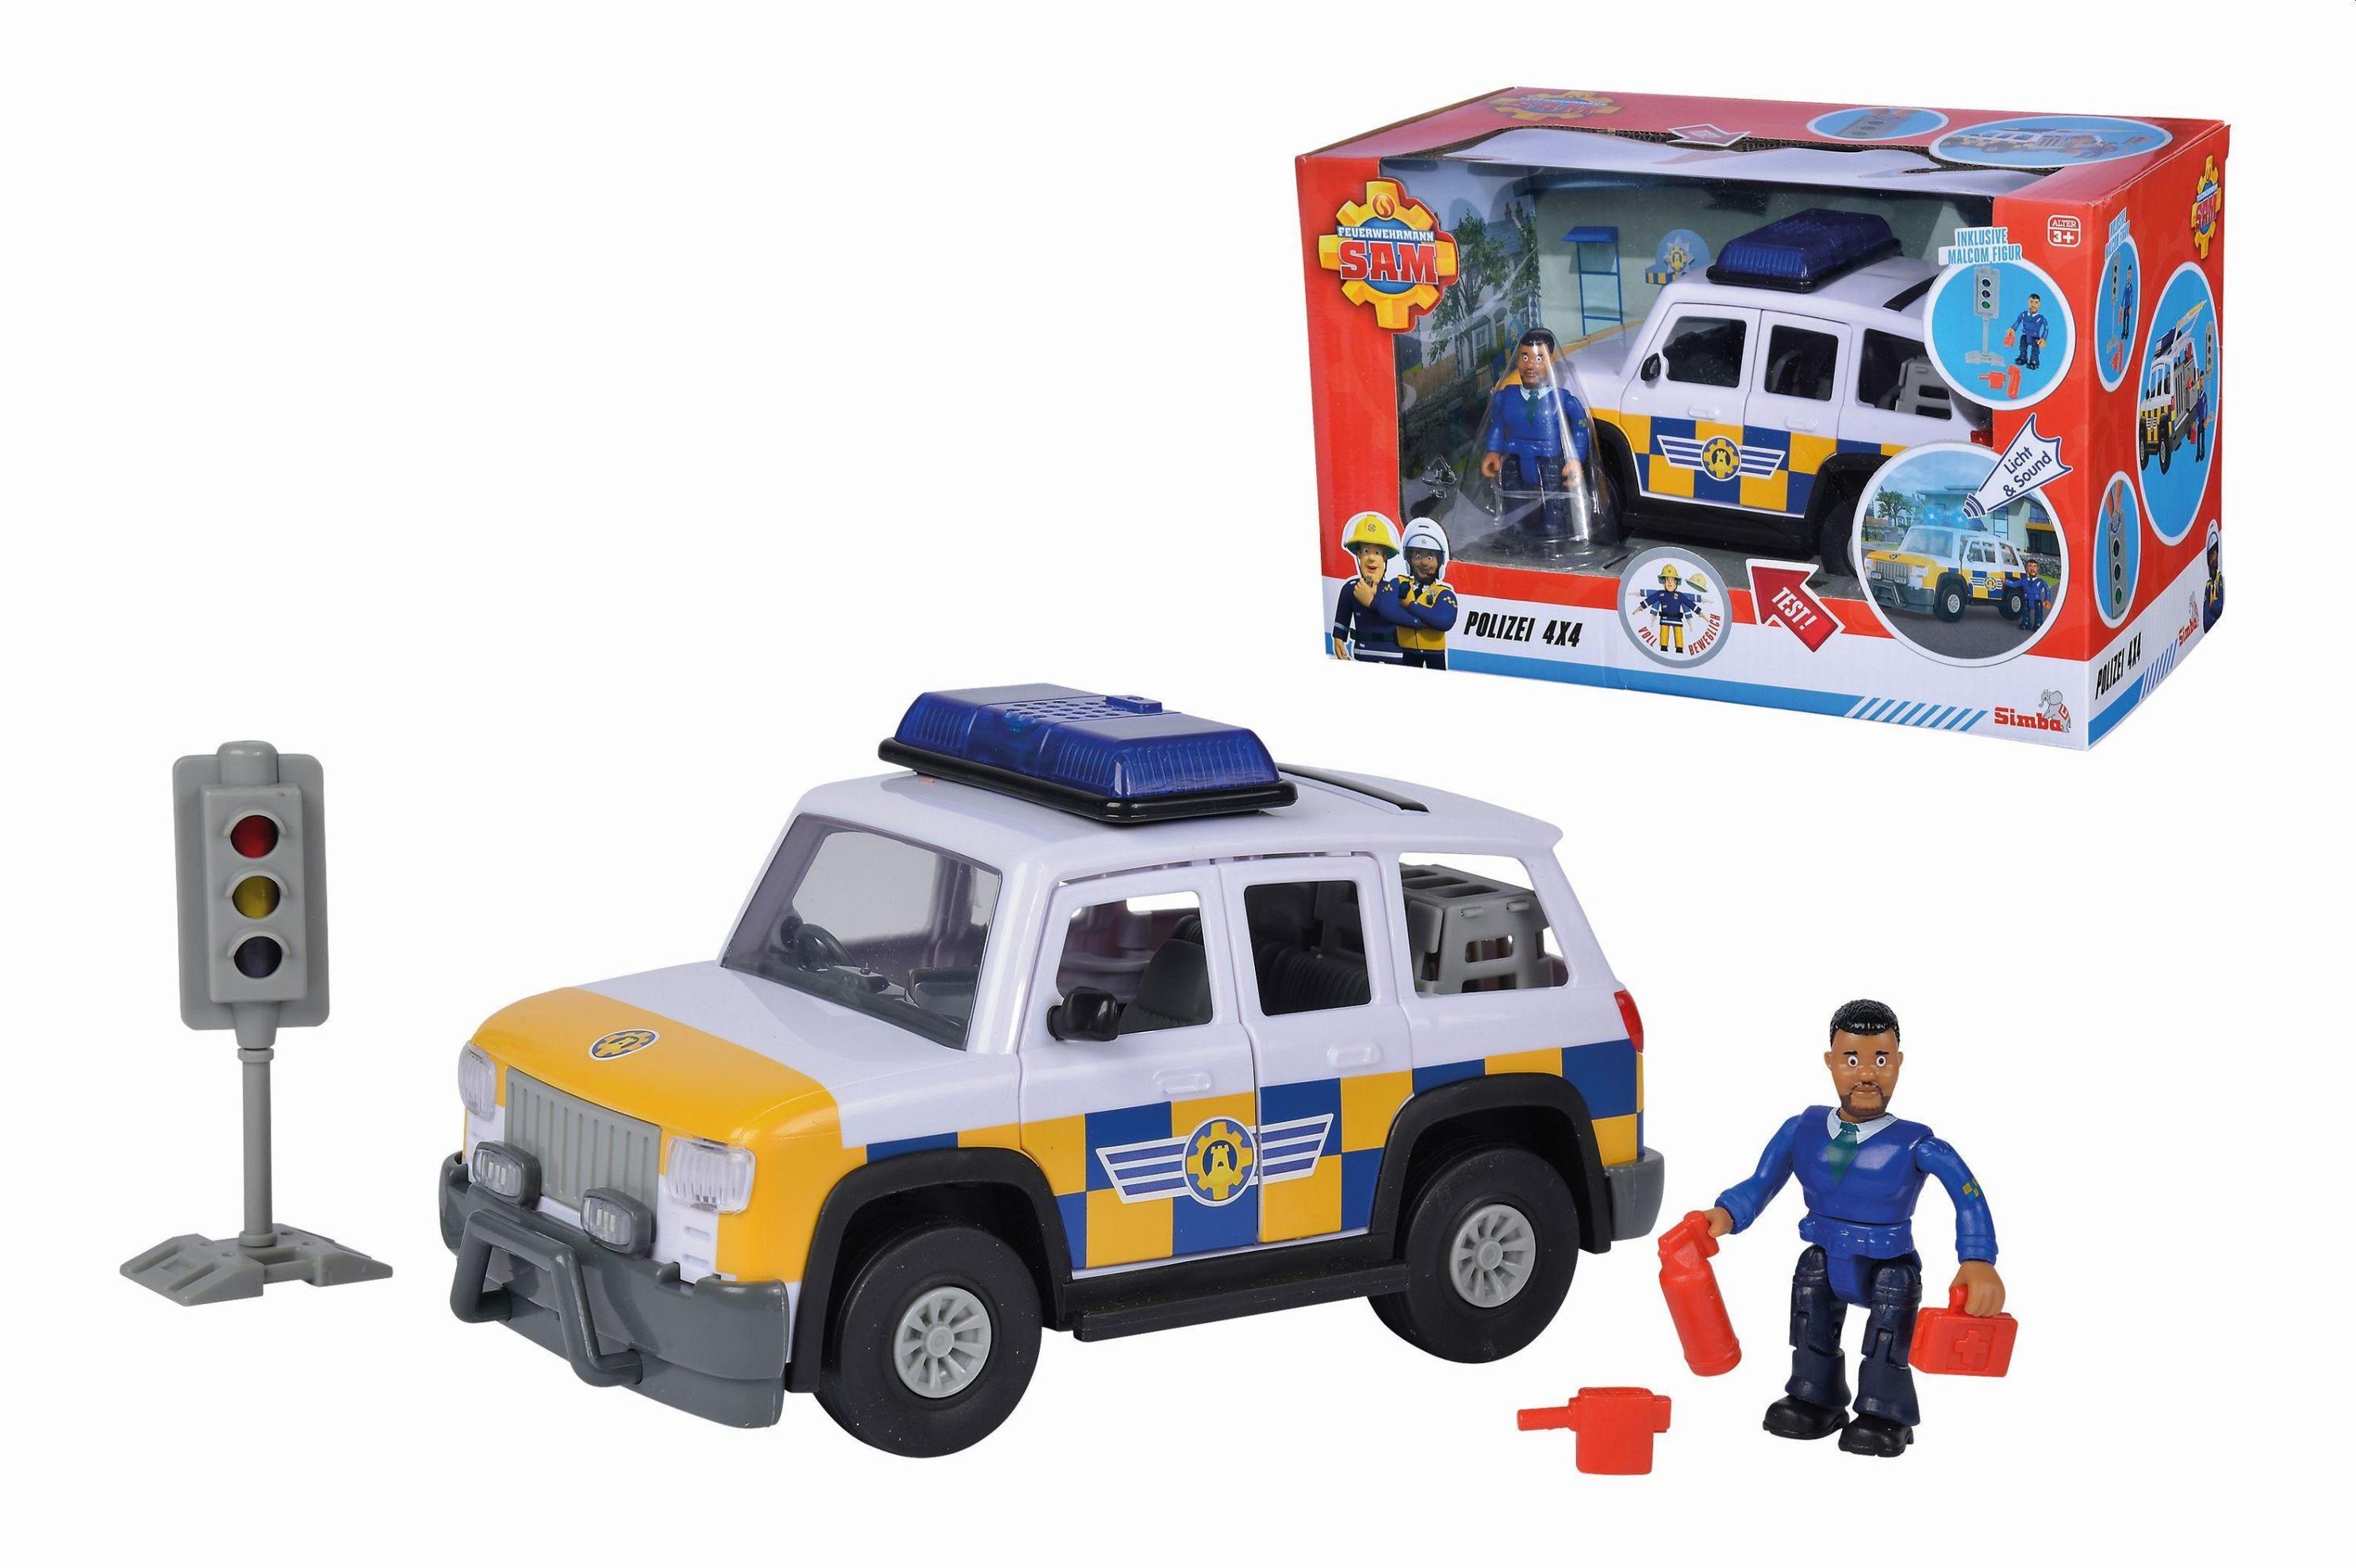 Sam Polizeiauto 4x4 mit Figur jetzt bei Weltbild.at bestellen